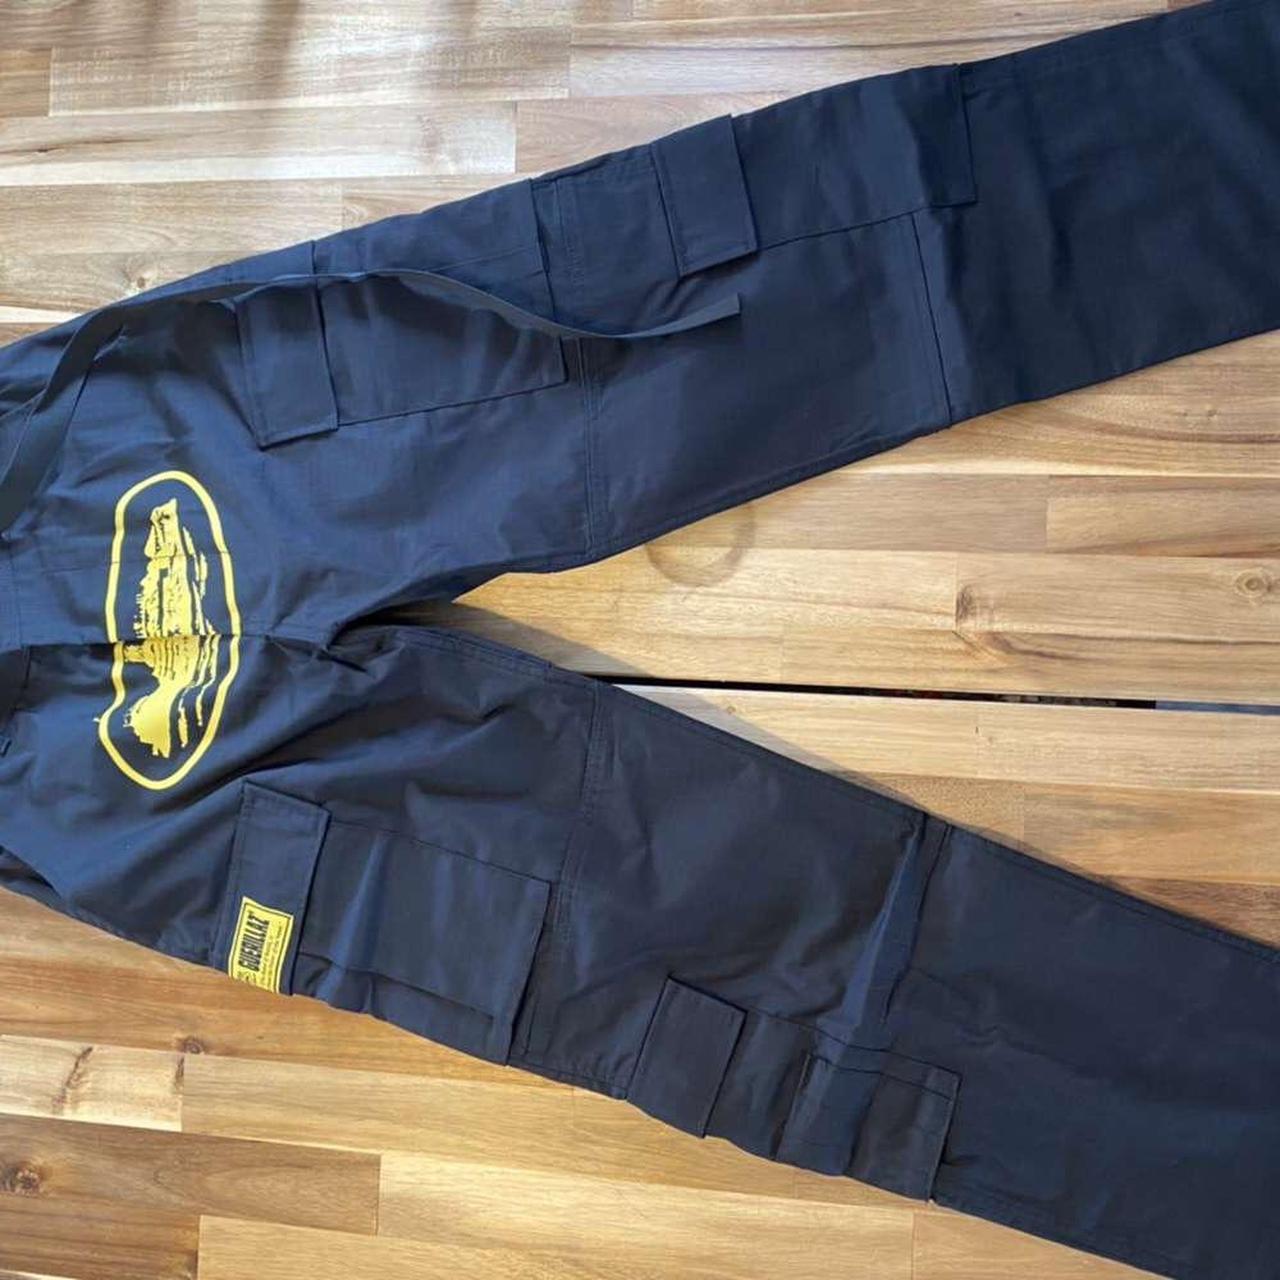 Cortiez cargo pants Size L Brand new 100% authentic - Depop